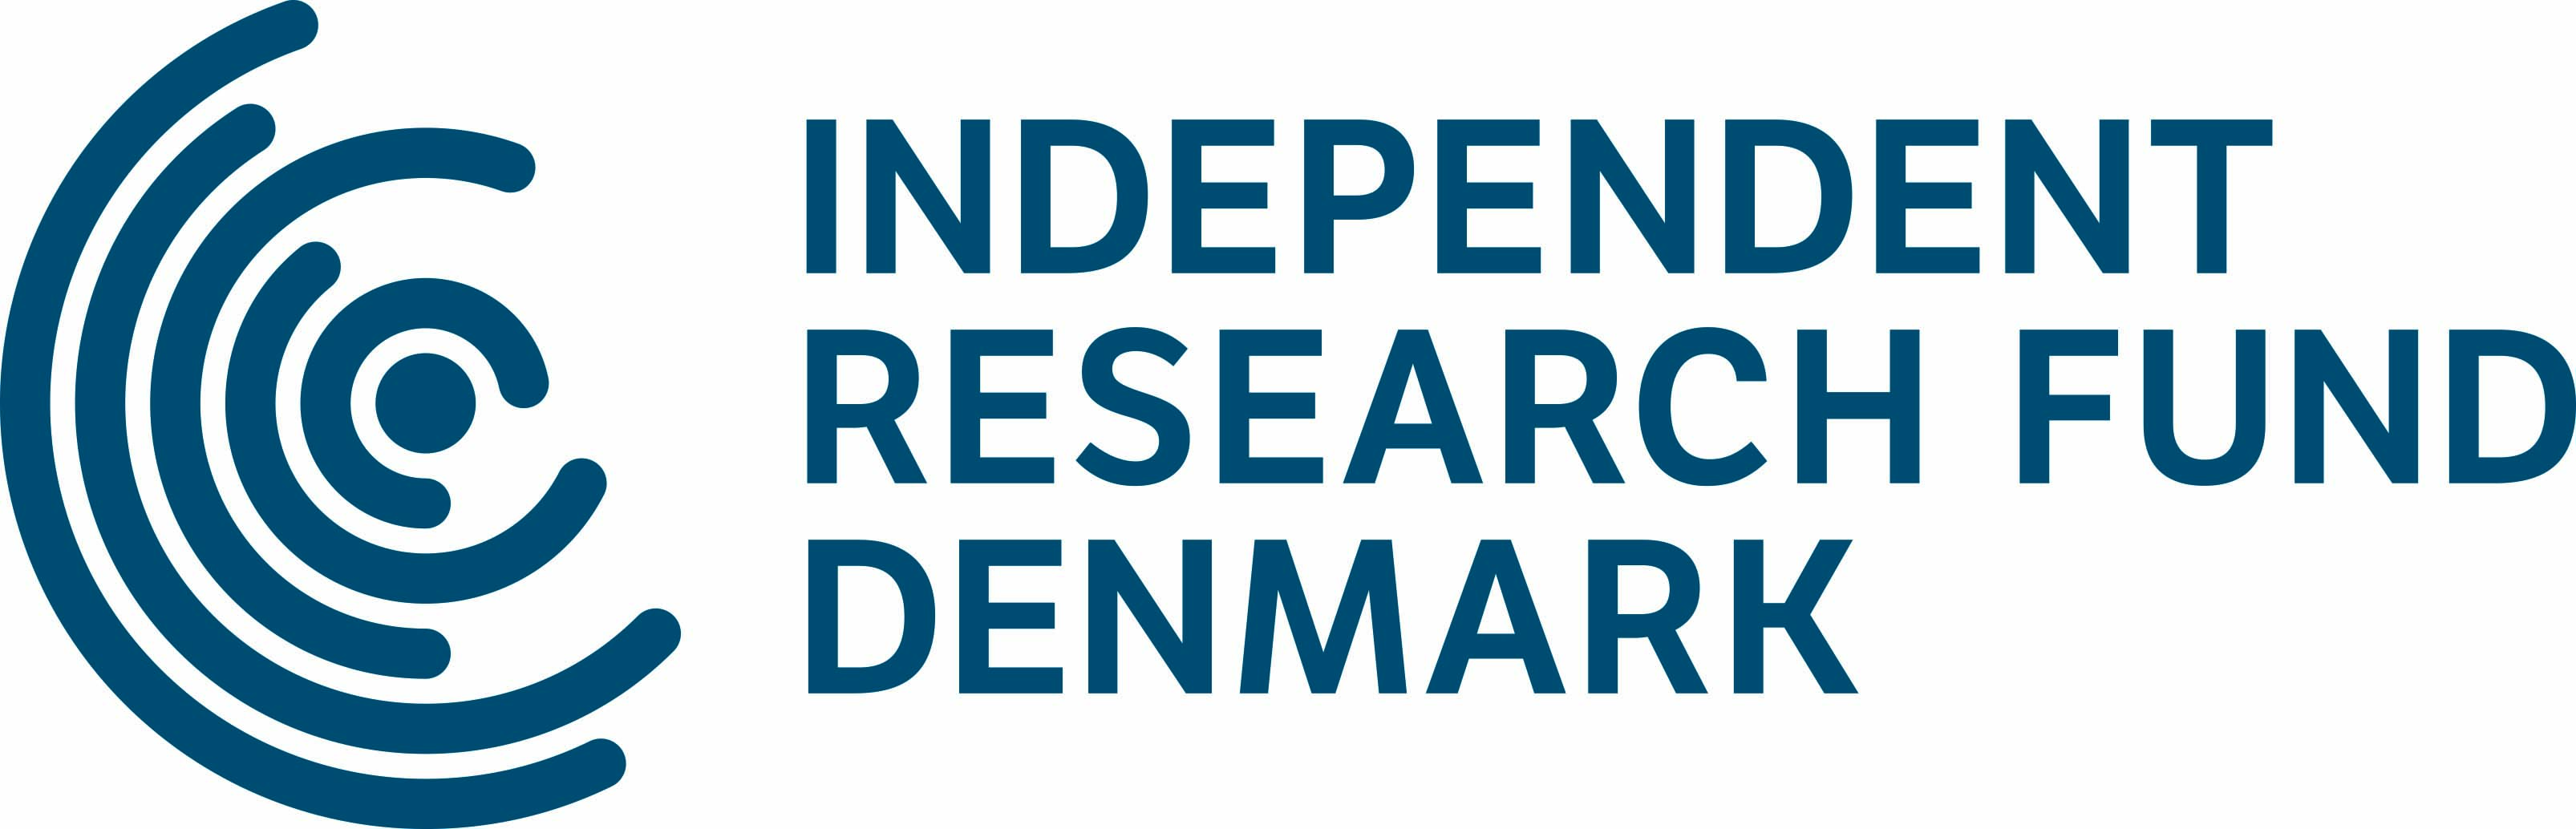 2020-01/independent-research-fund-denmark.jpg